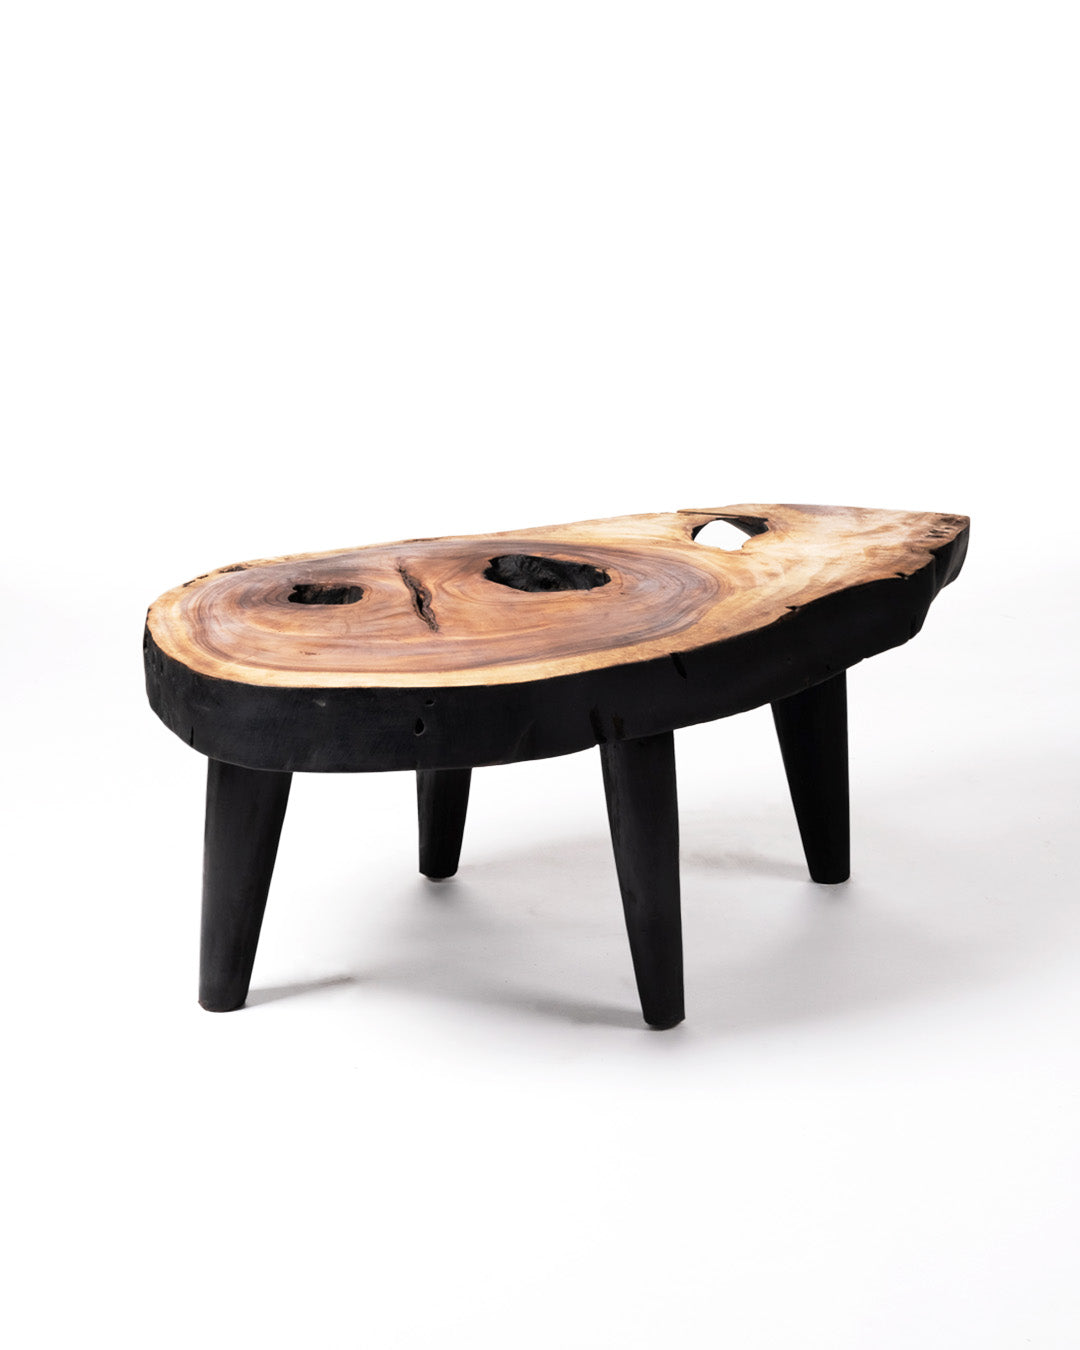 Mesa de centro de madera maciza natural de teca Bau Bau tronco rustico, hecho a mano acabado natural con detalles en negro, disponible en diferentes medidas, origen Indonesia